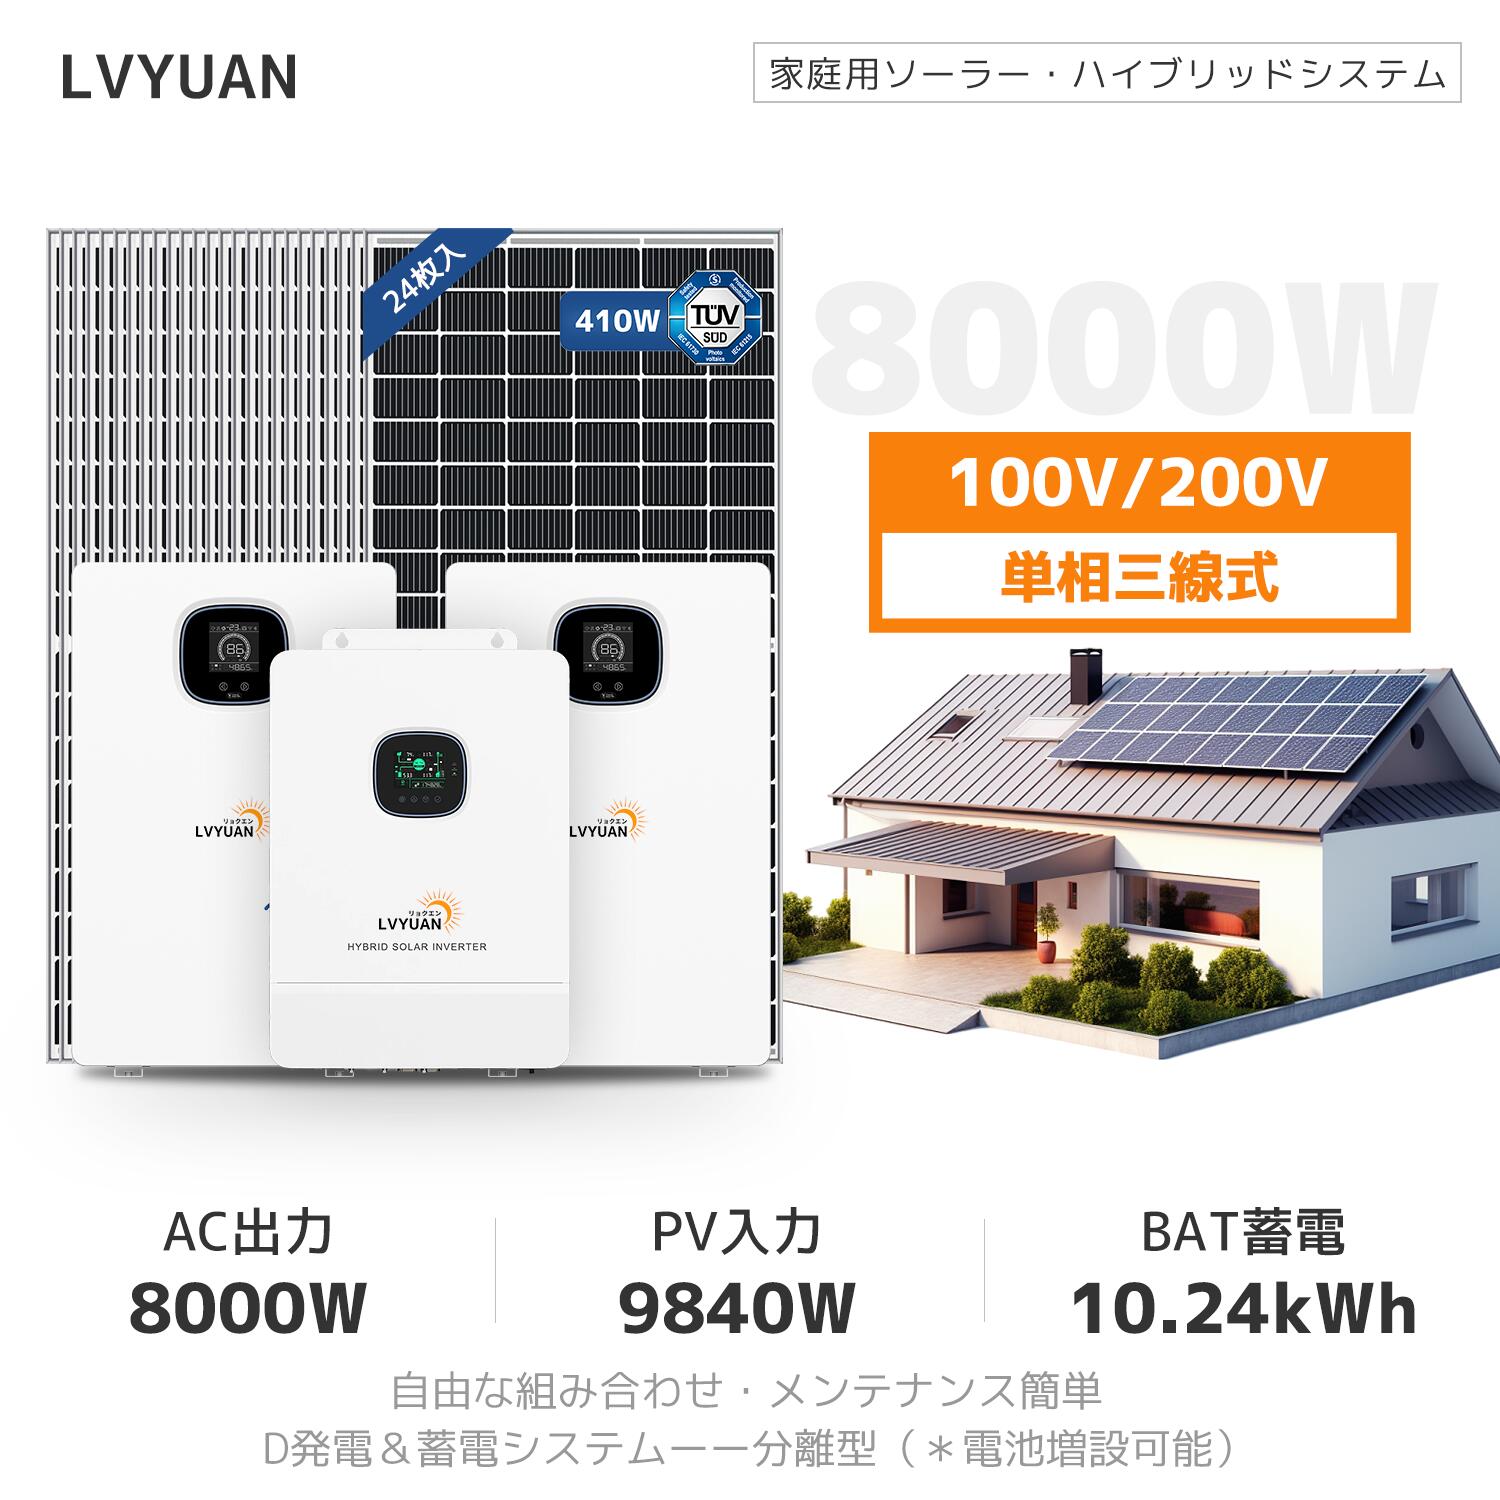 【日本企業による安心のサポート体制】LVYUAN 8KWハイブリッド ソーラー発電システム 【日本語施工方法取扱説明書付】セット内容（LVYUAN社製8000w ハイブリッドインバーターと5.12kWhLiFePO4 バッテリー（2台）、24枚の410wのソーラーパネル） 送料無料 2